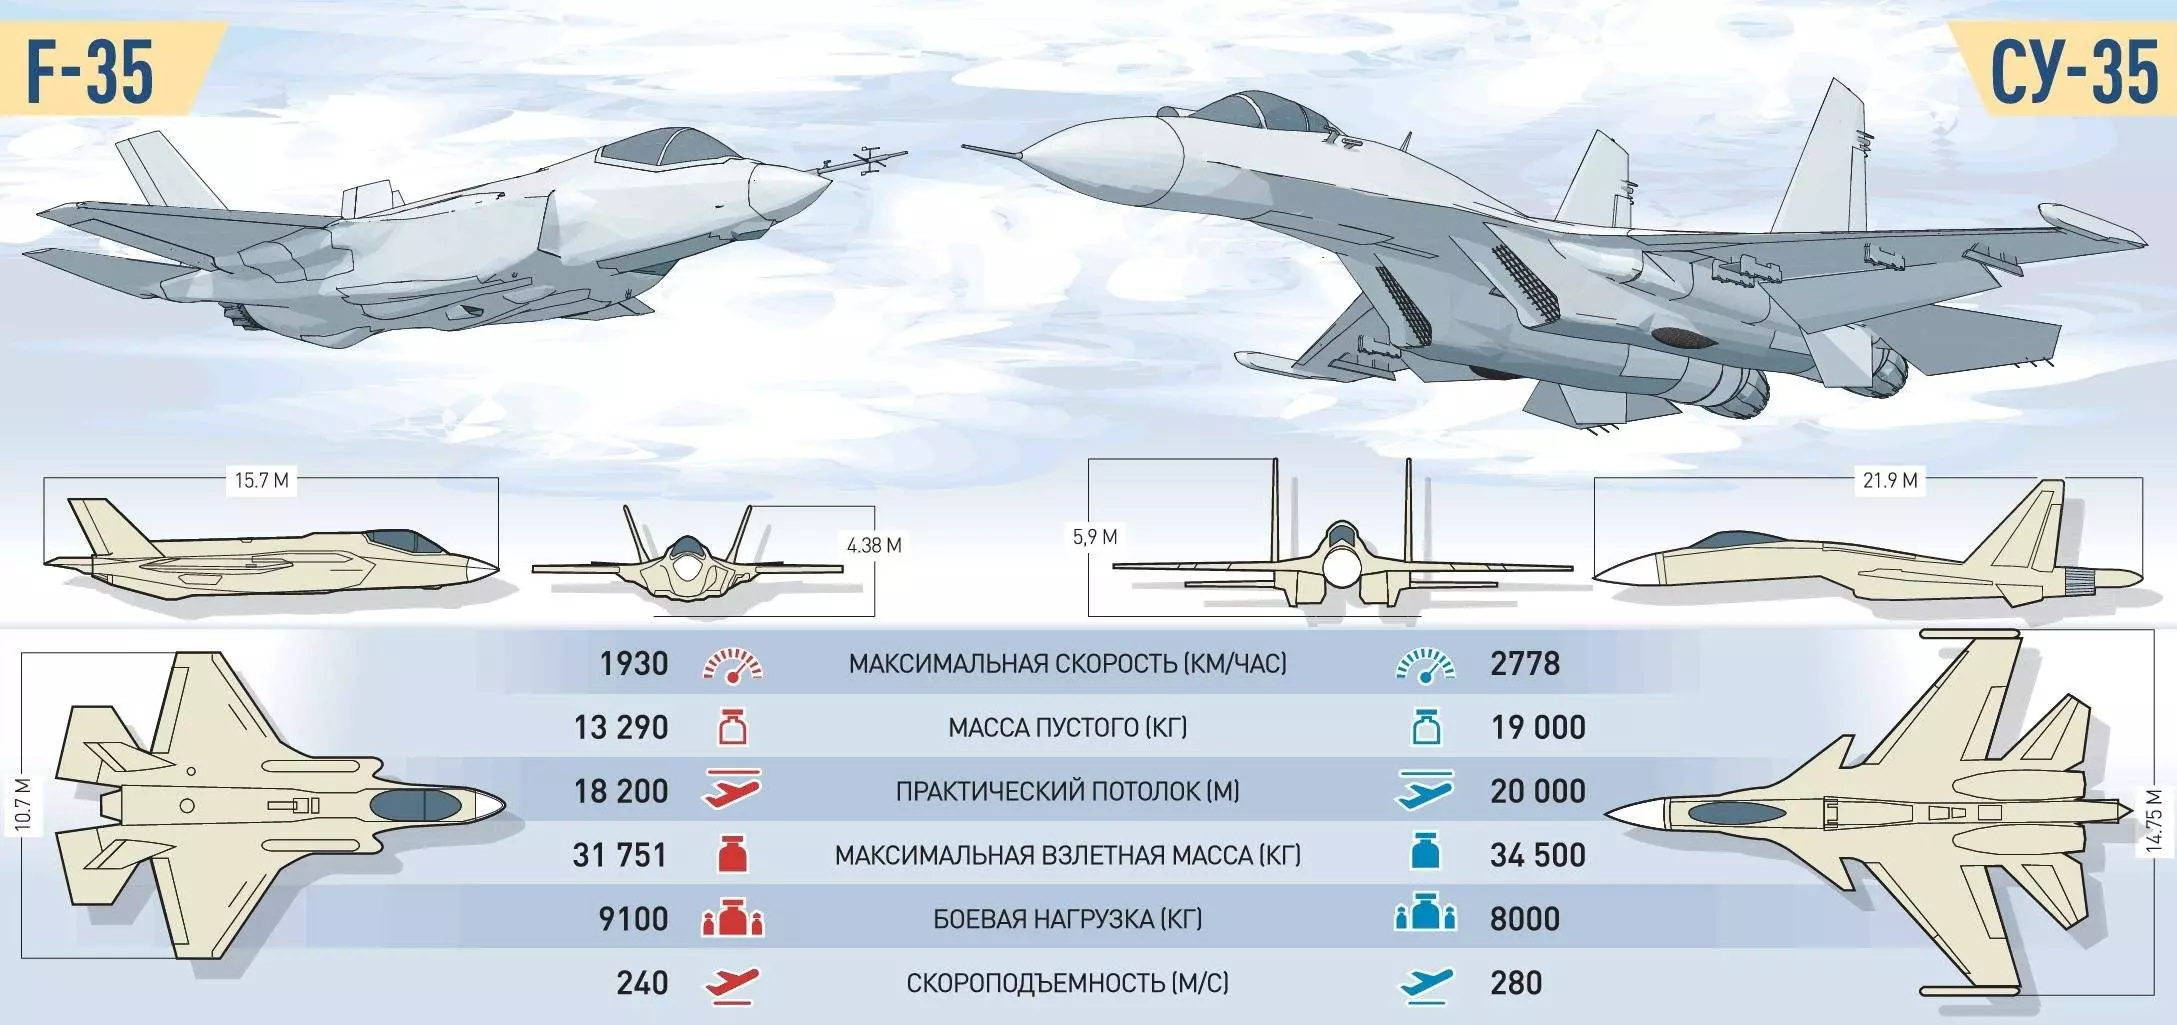 Самолет су-35: реактивный истребитель, технические характеристики (ттх), вес, скорость